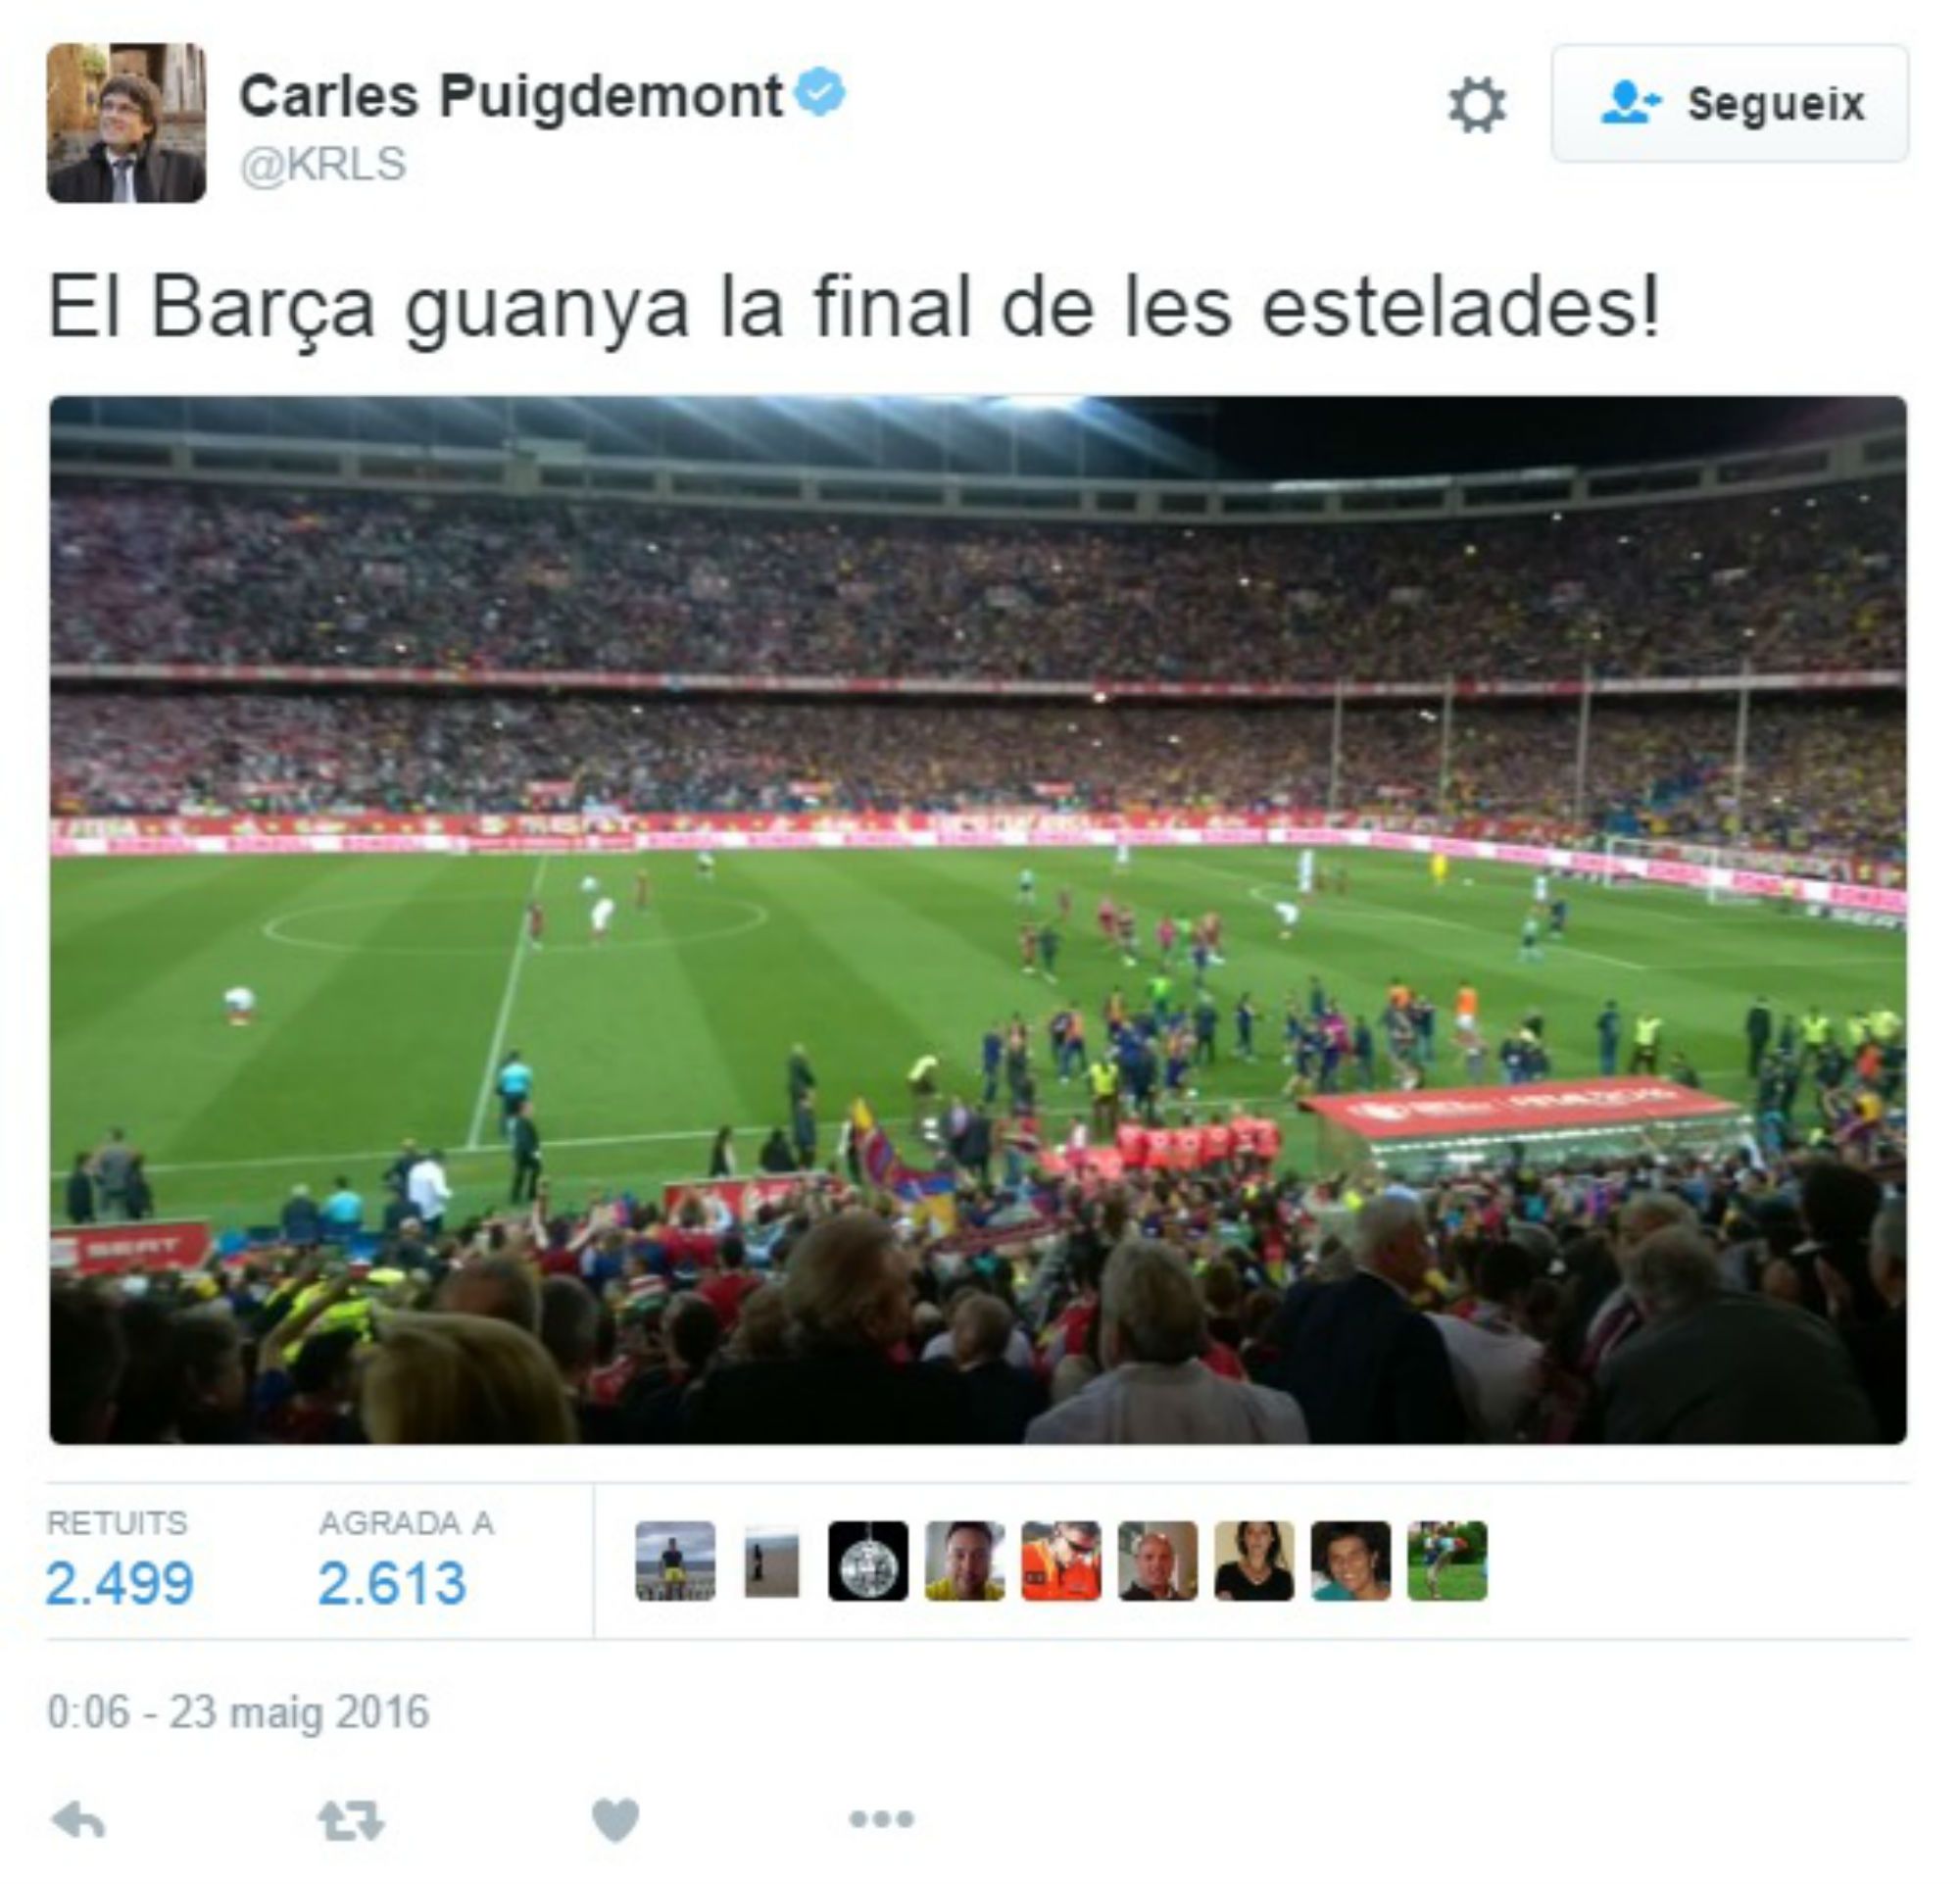 Un tuit de Puigdemont sobre "la final de las estelades" crea polémica en la red